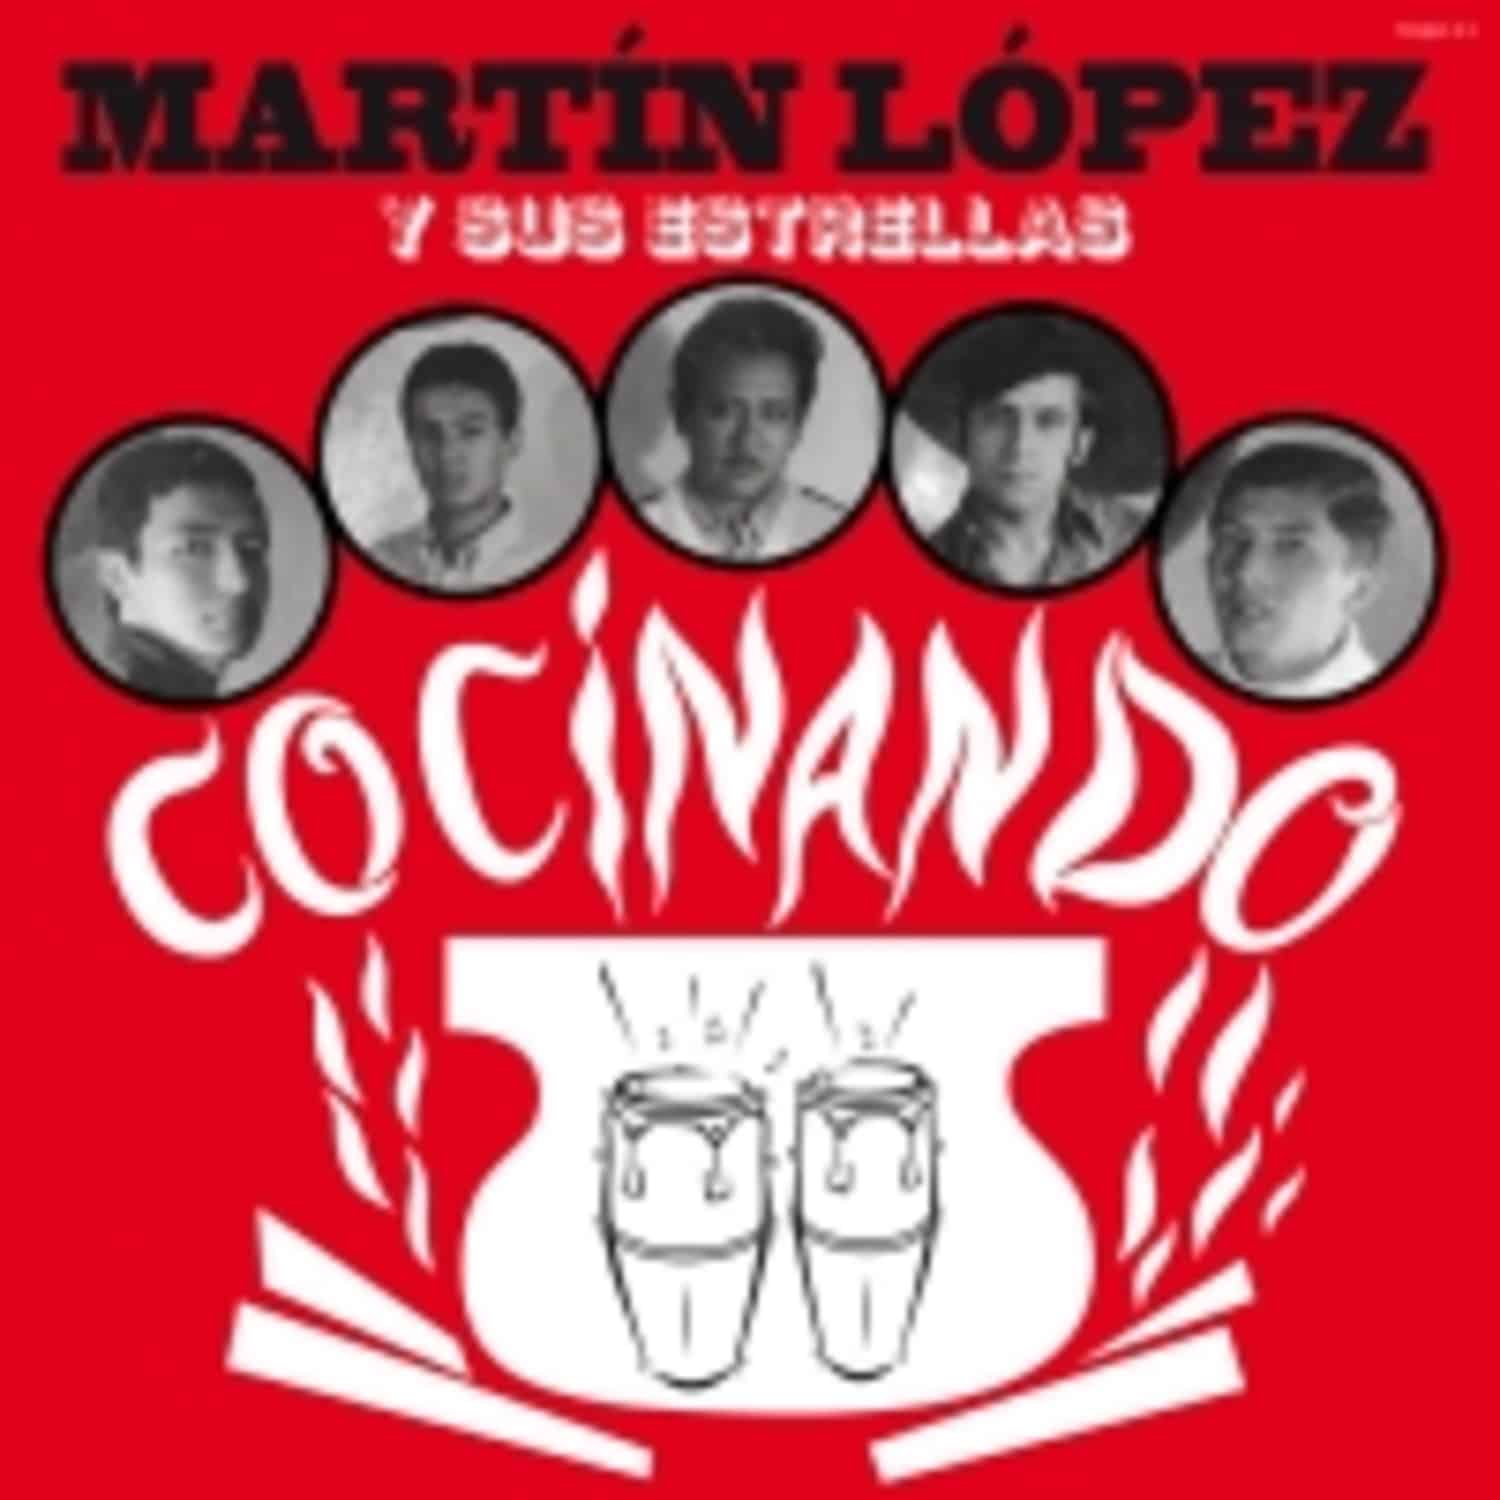 Martin Lopez Y Su Estrellas - COCINANDO